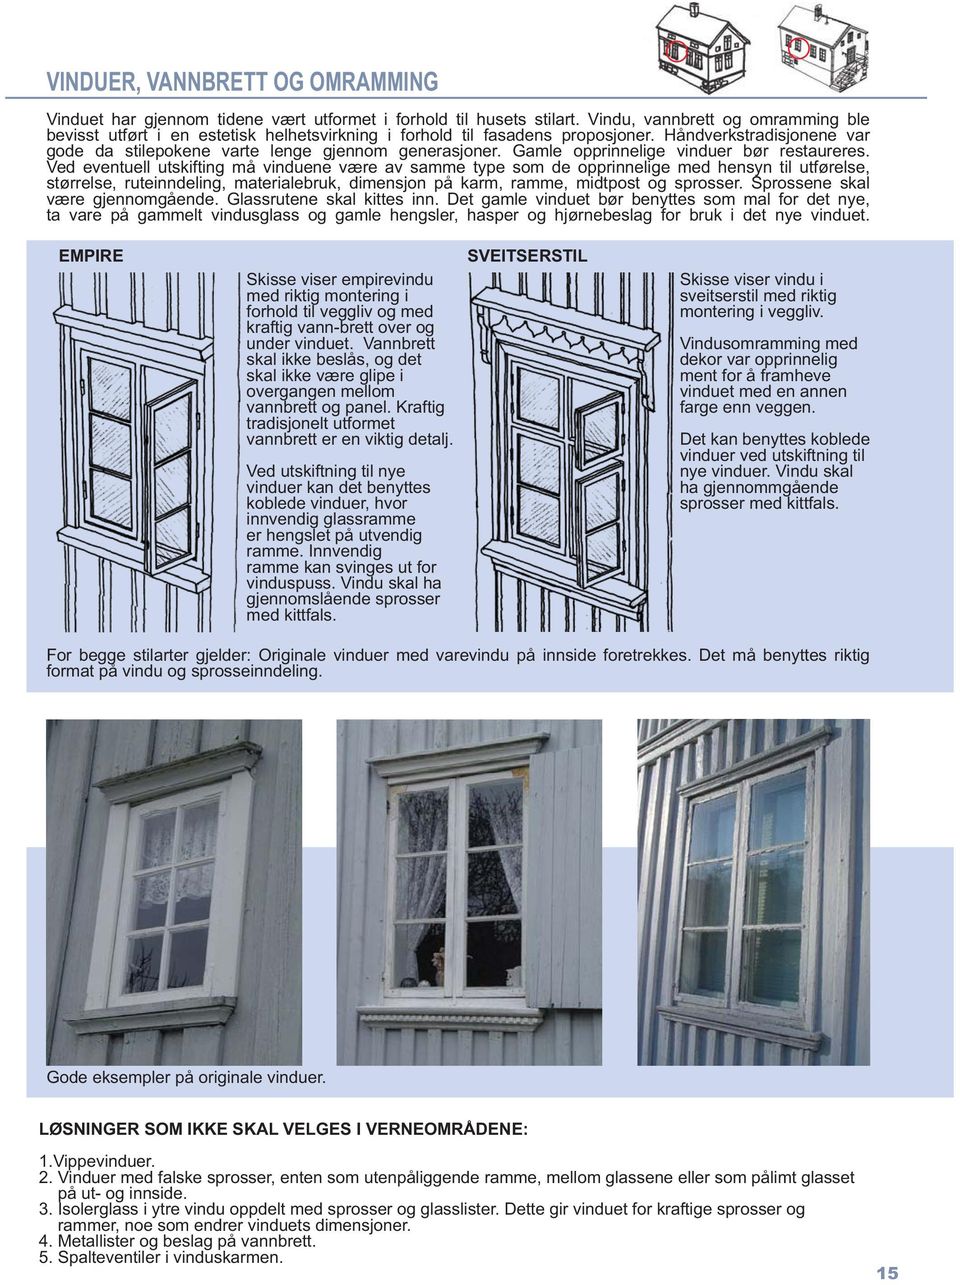 Gamle opprinnelige vinduer bør restaureres.